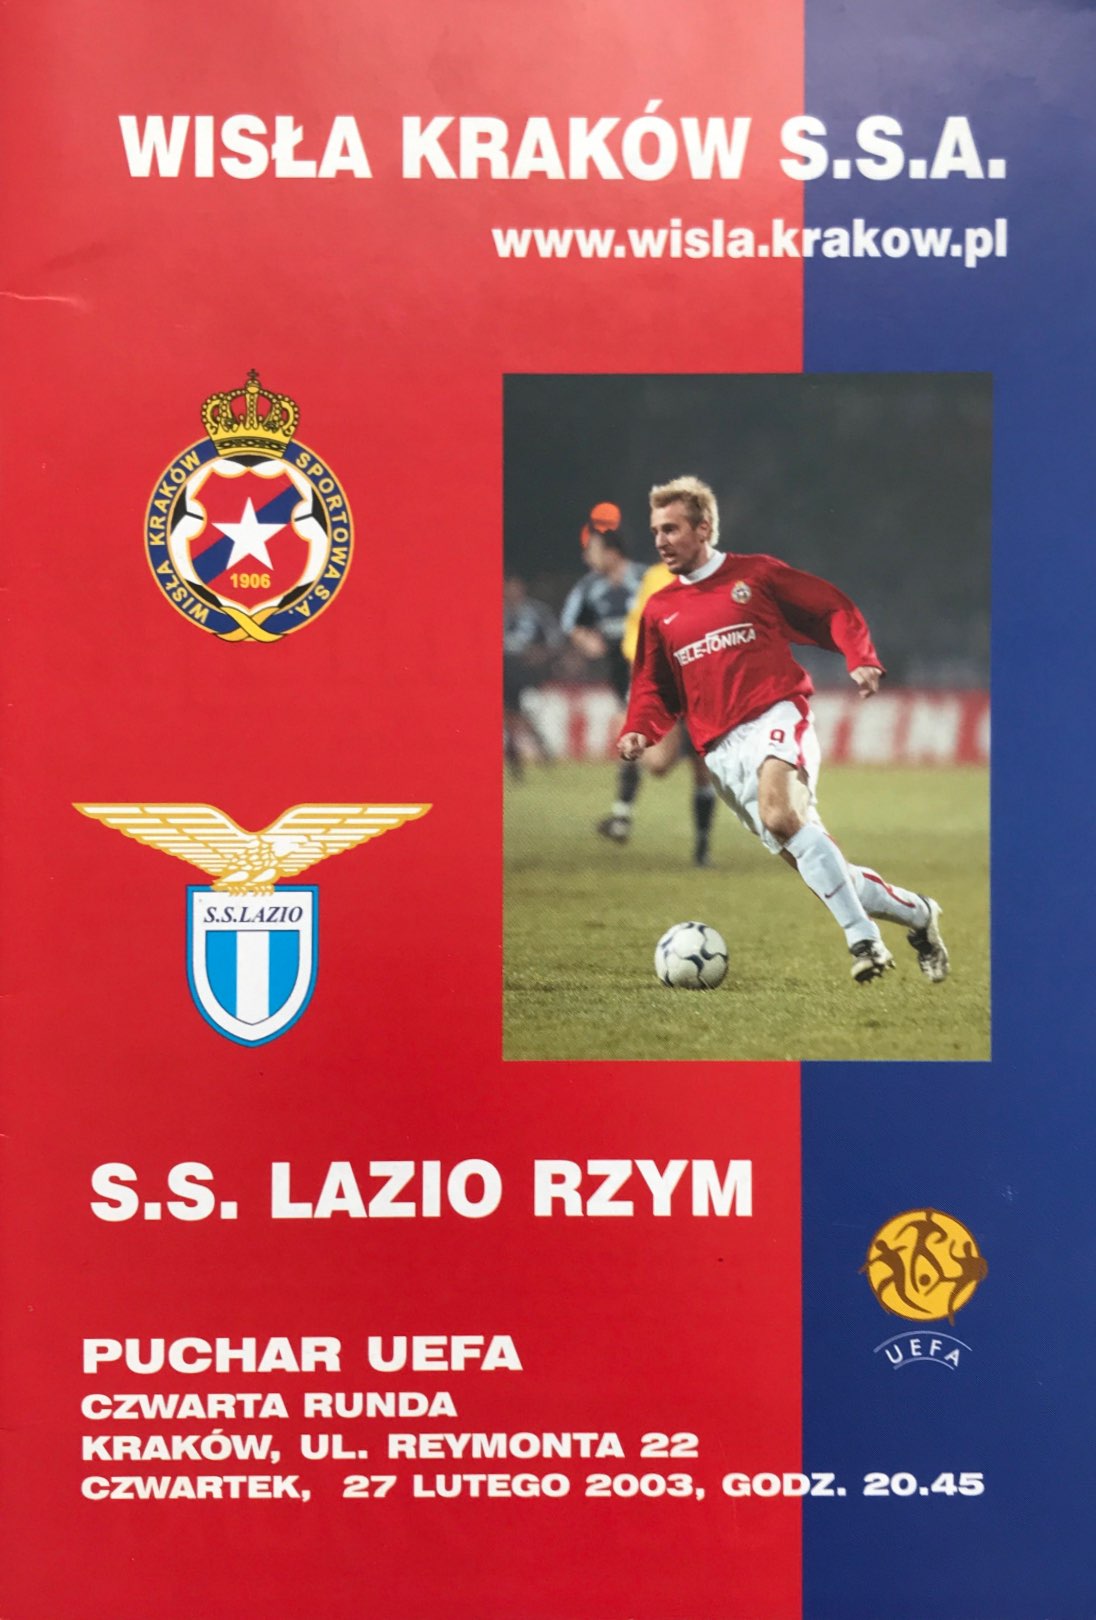 Program meczowy Wisła Kraków - Lazio Rzym 1:2 (05.03.2003).